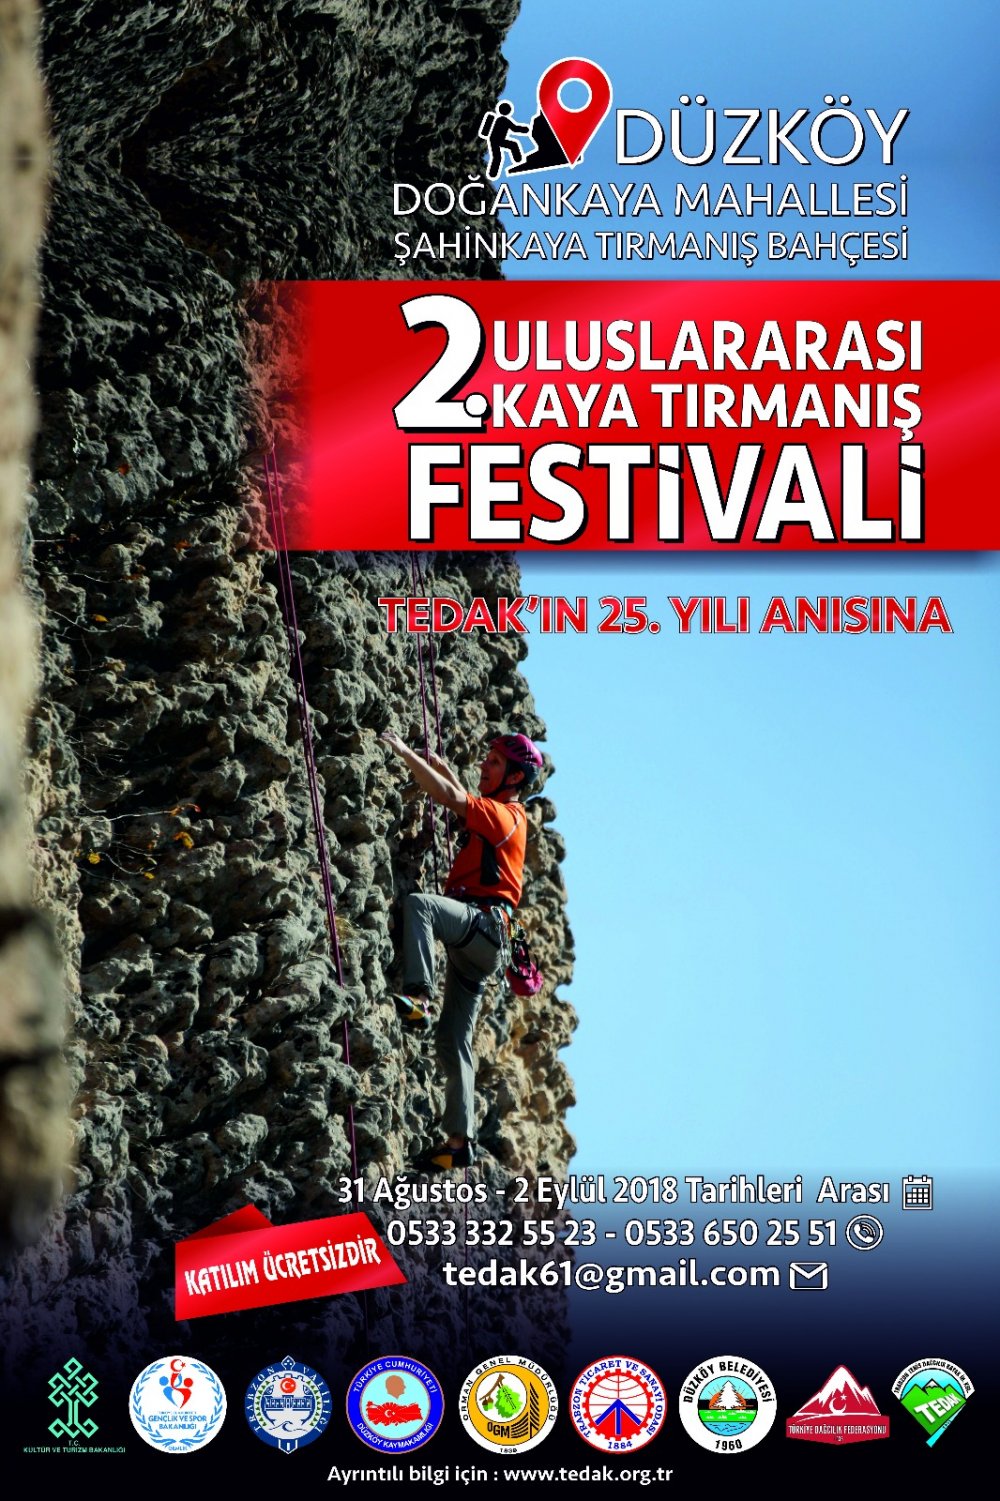 Düzköy'de Uluslararası Festival başlıyor